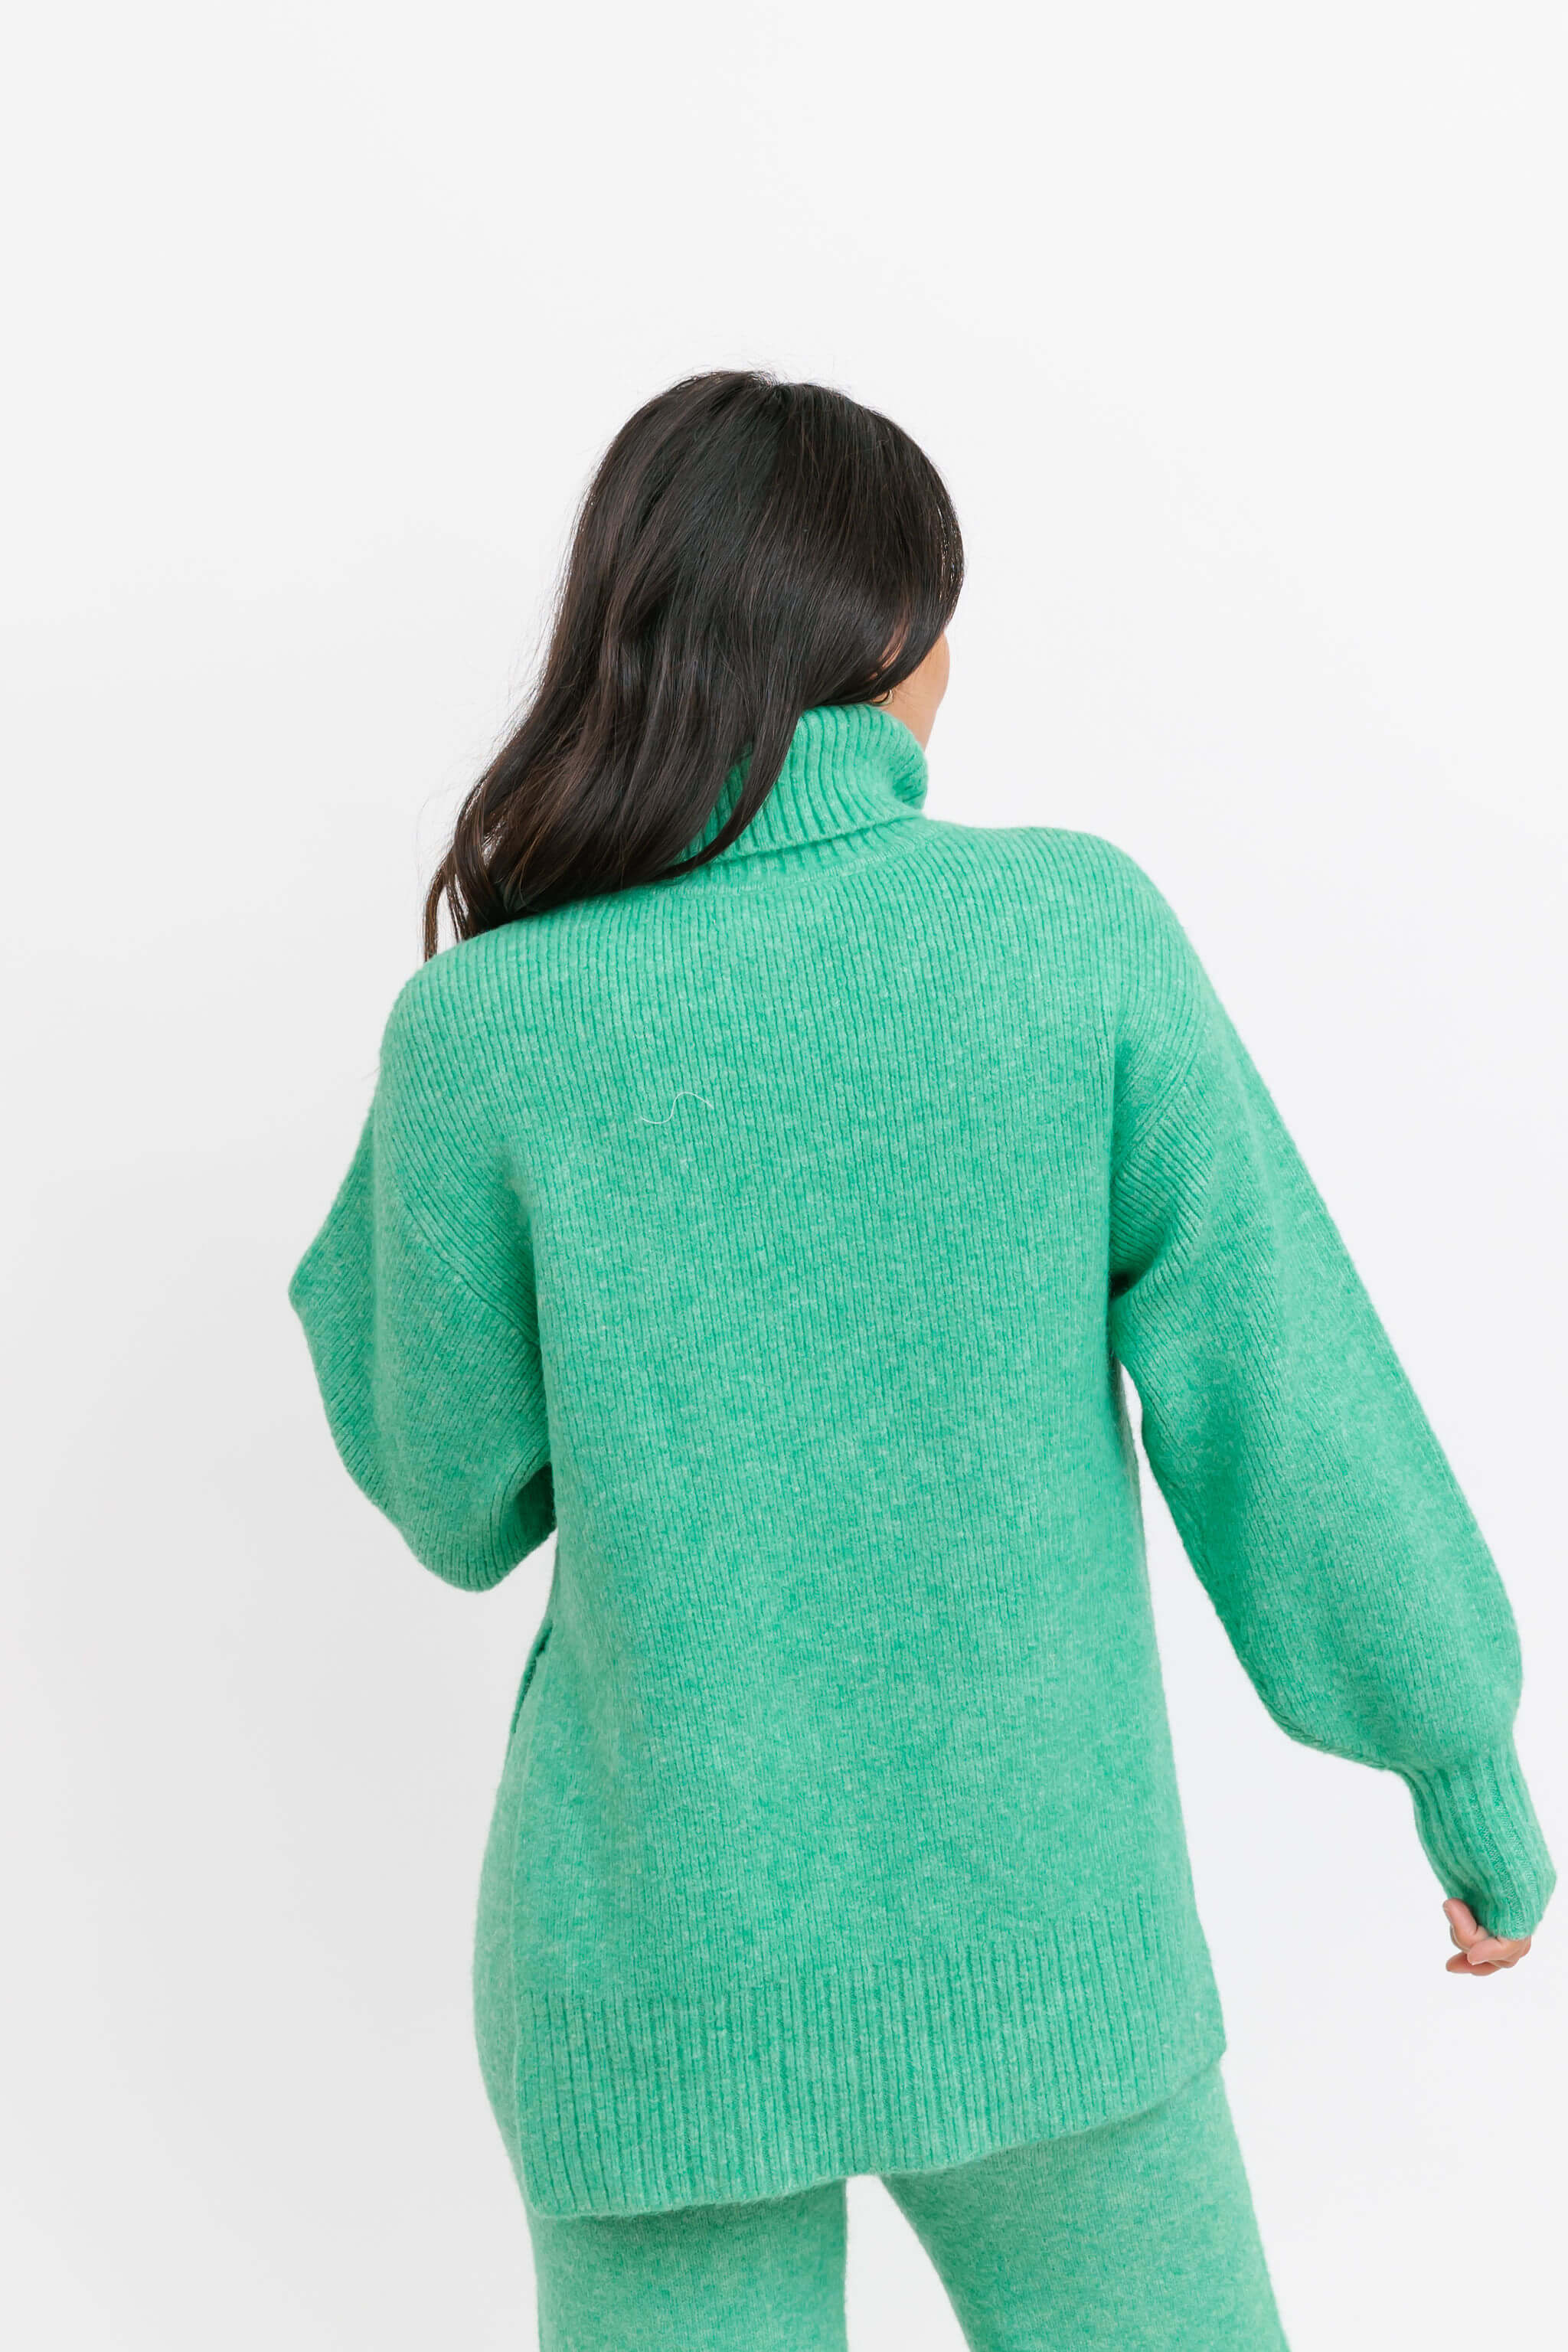 Smash + Tess Loren Turtleneck Sweater in Emerald Green